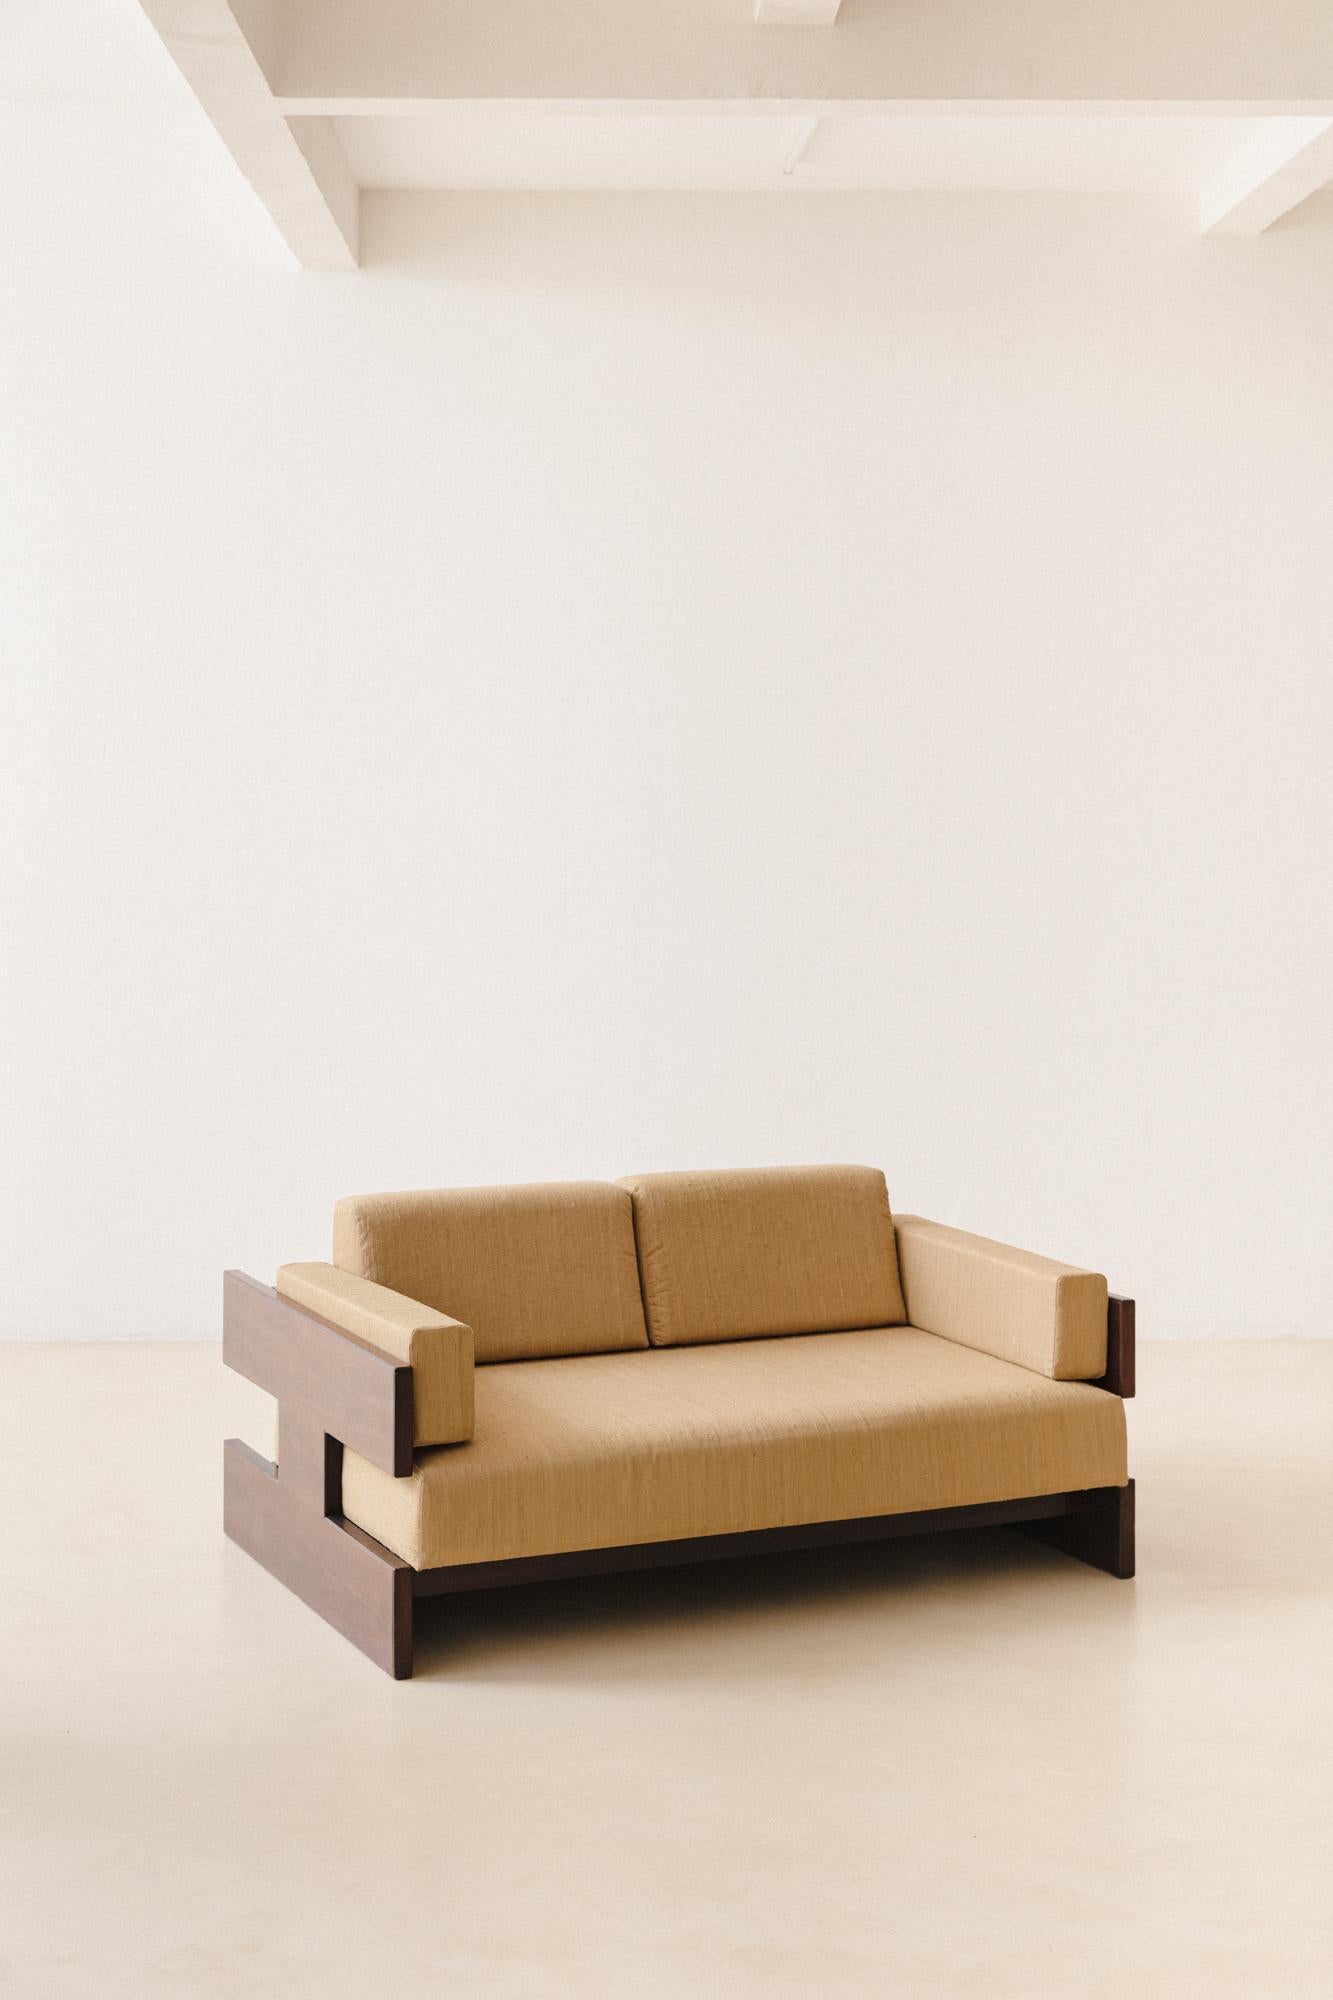 Dieses Sofa wurde in den 1960er Jahren von der brasilianischen Firma Celina Decoraes hergestellt. Das Stück ist aus Imbuia-Holz gefertigt, die Sitze und Rückenlehnen sind mit einem wunderschönen 100% organischen Seidenstoff aus unserer Kollektion